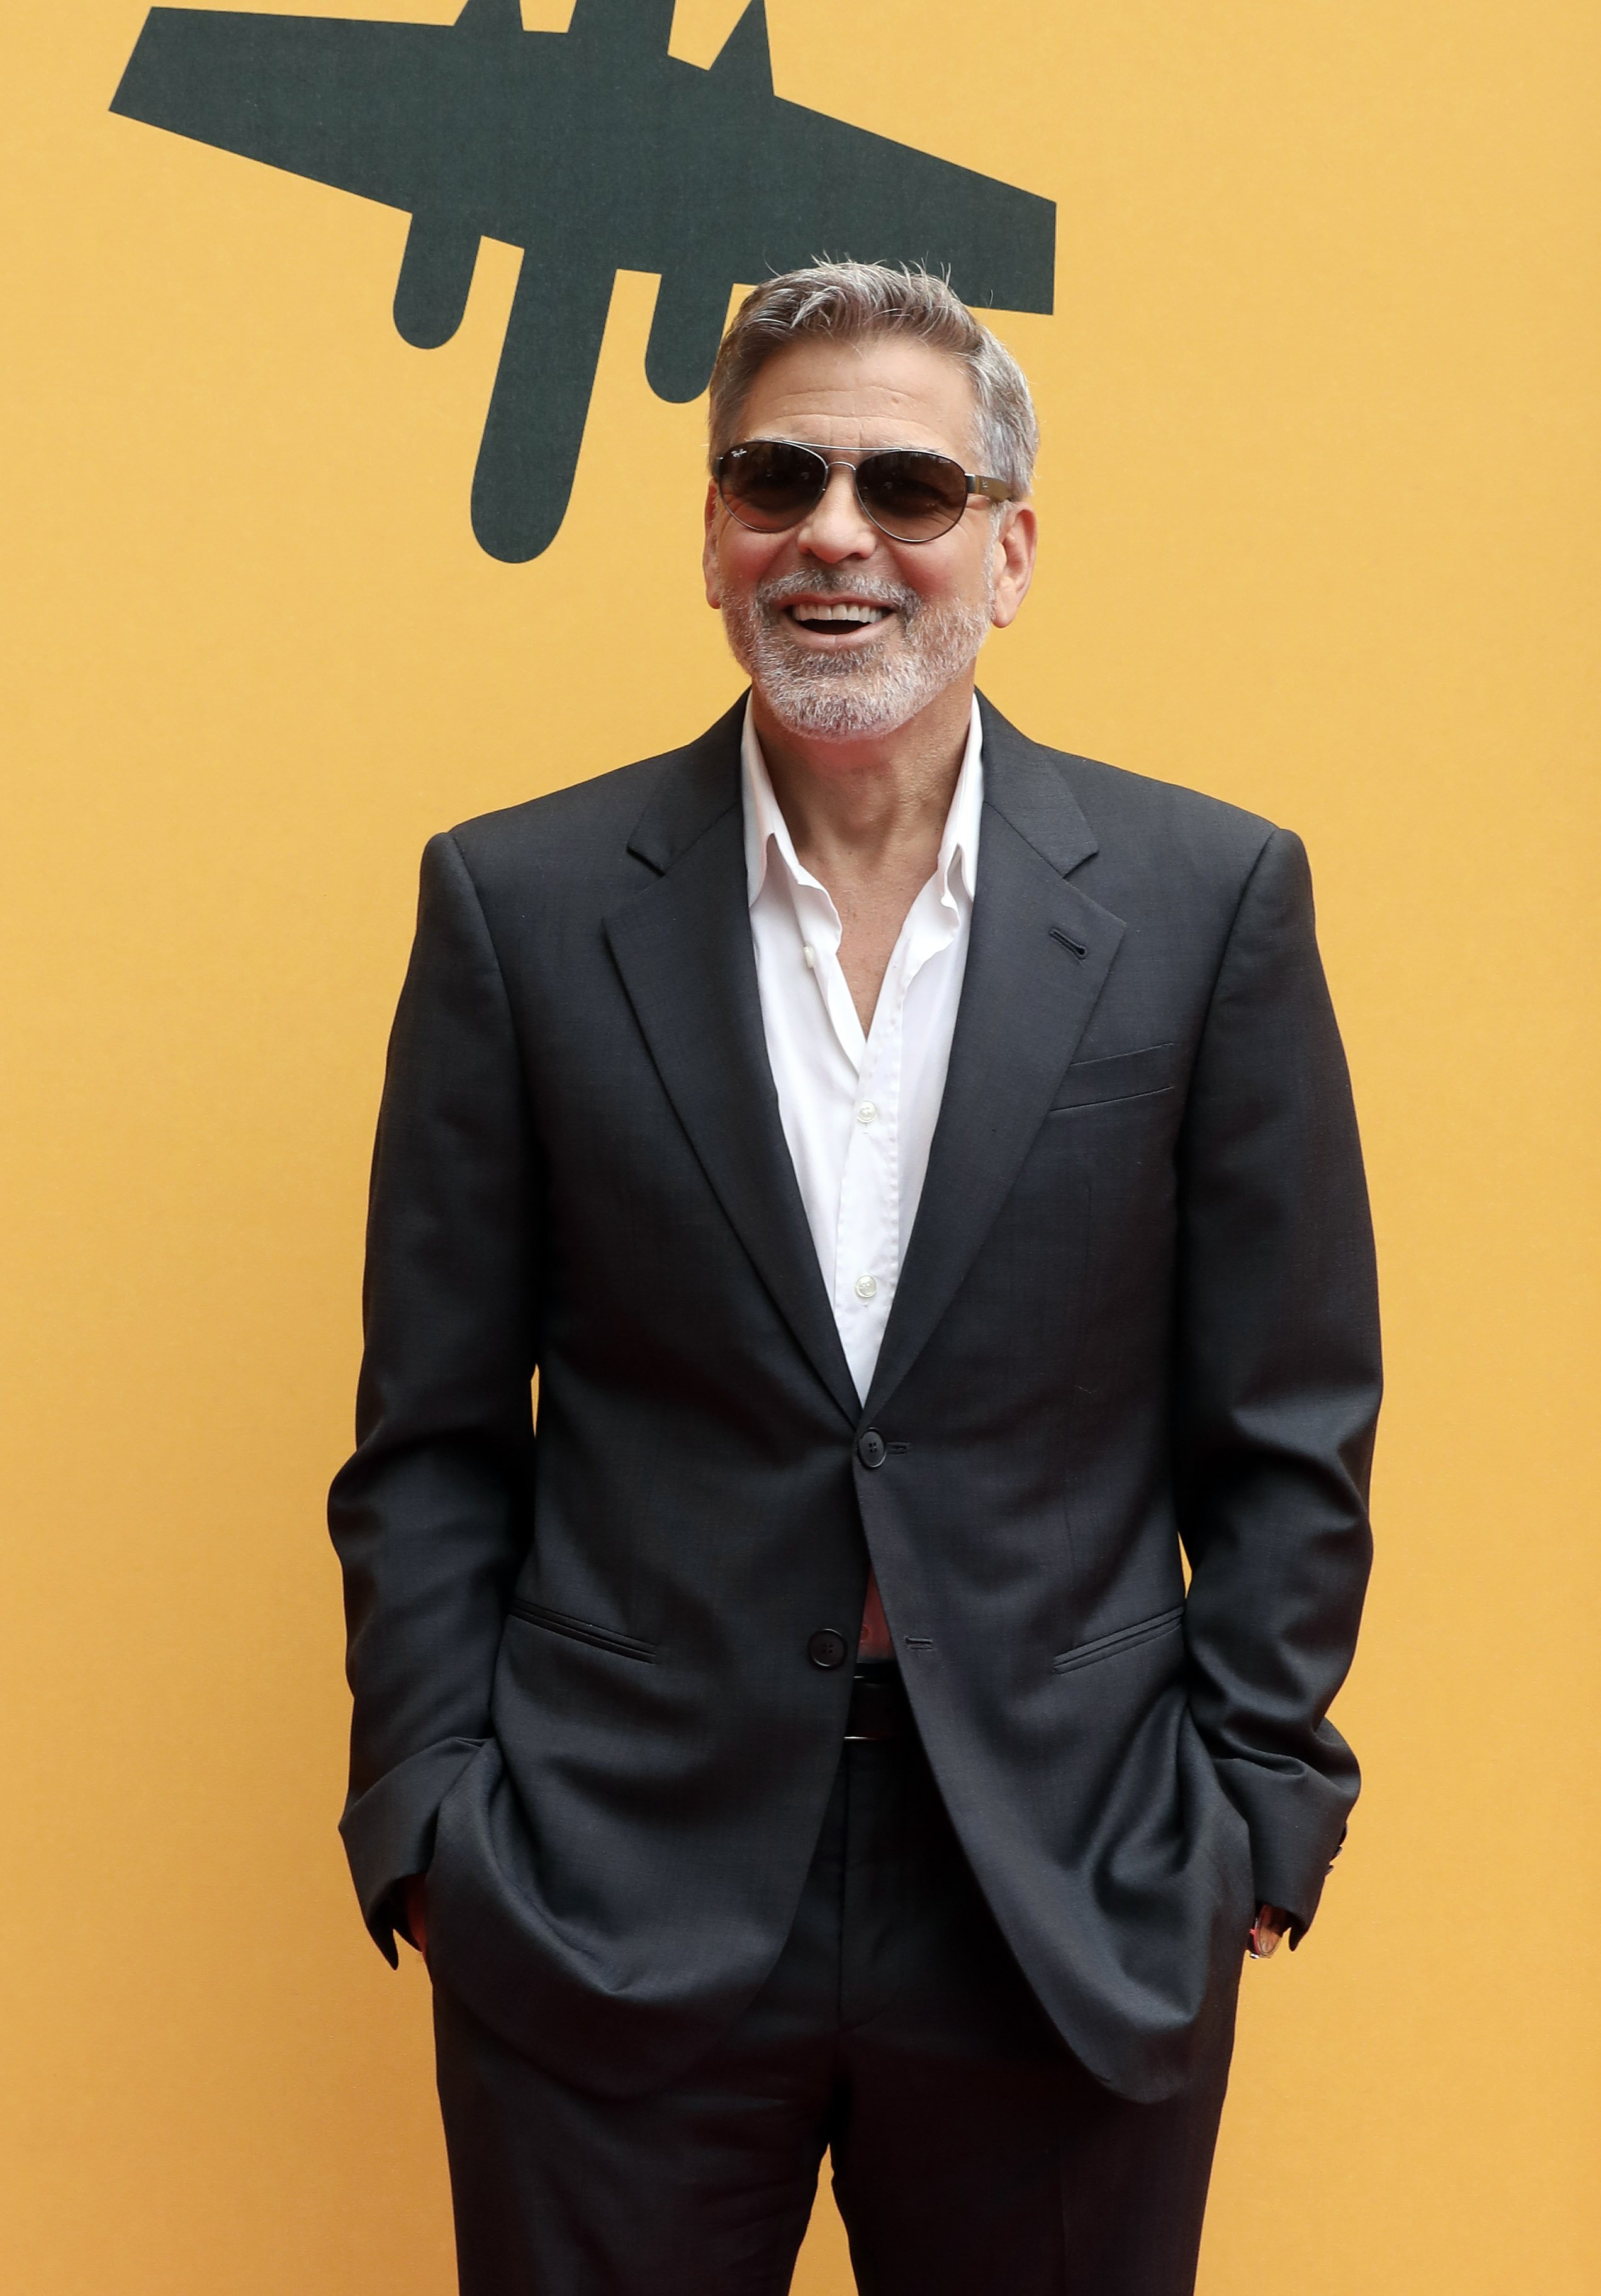 George Clooney en la sesión de fotos "Catch-22" en The Space Moderno Cinema, el 13 de mayo de 2019 en Roma, Italia. | Foto: Getty Images